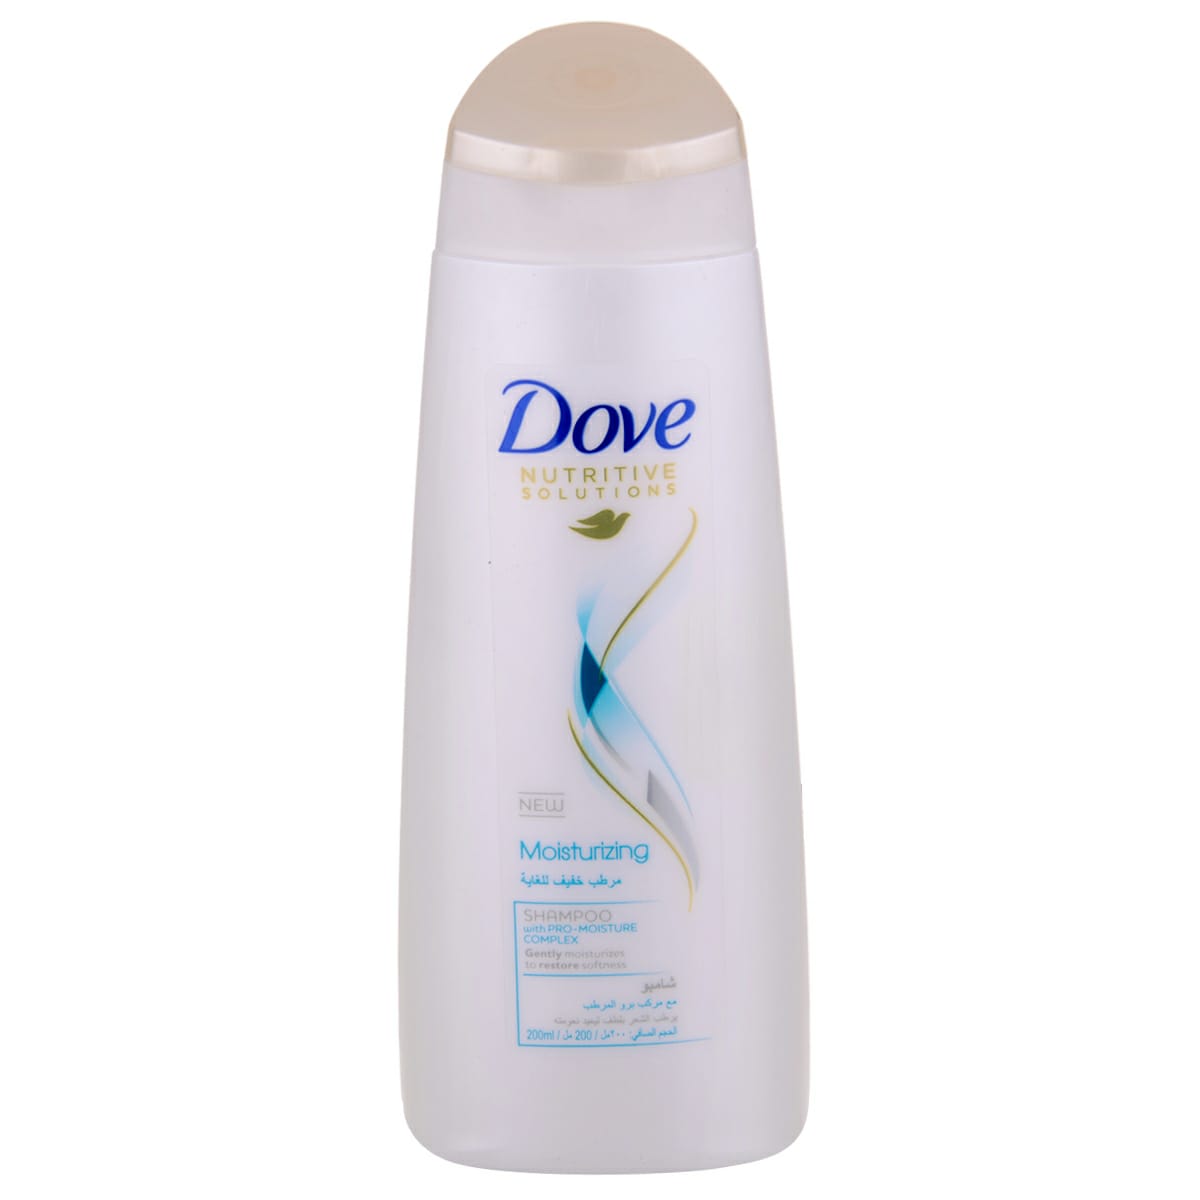 Dove shampoo moisturising 200 ml